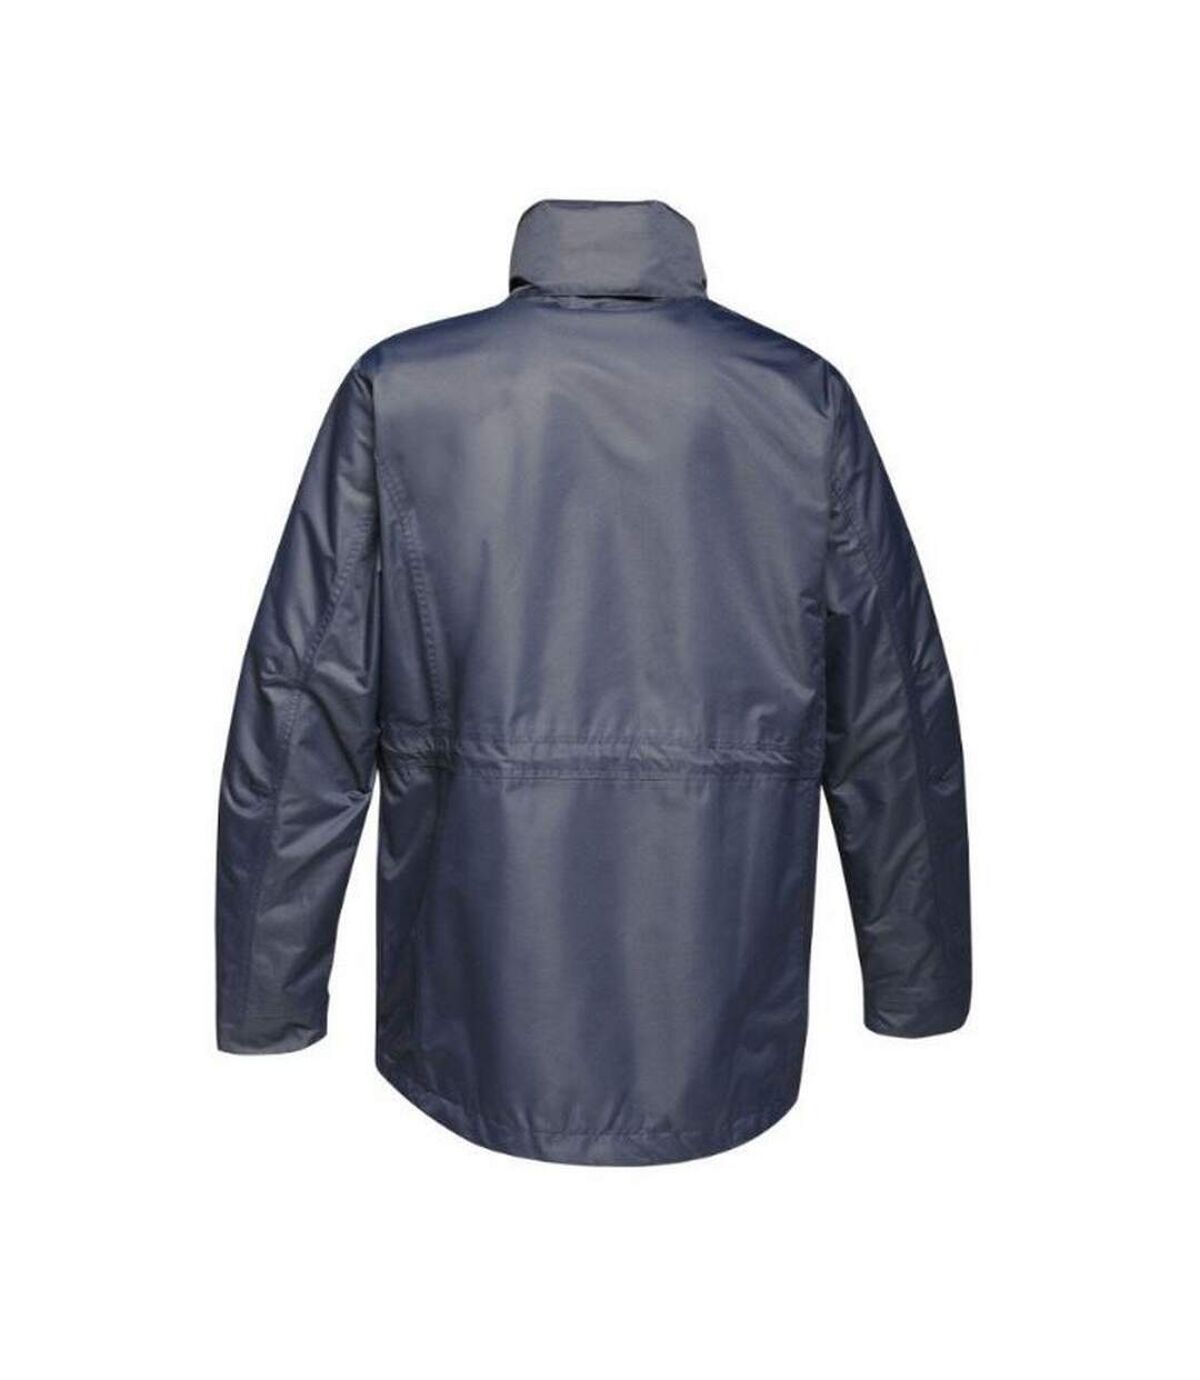 Regatta Mens Benson III Hooded Jacket (Gray Blue) - UTRG3742